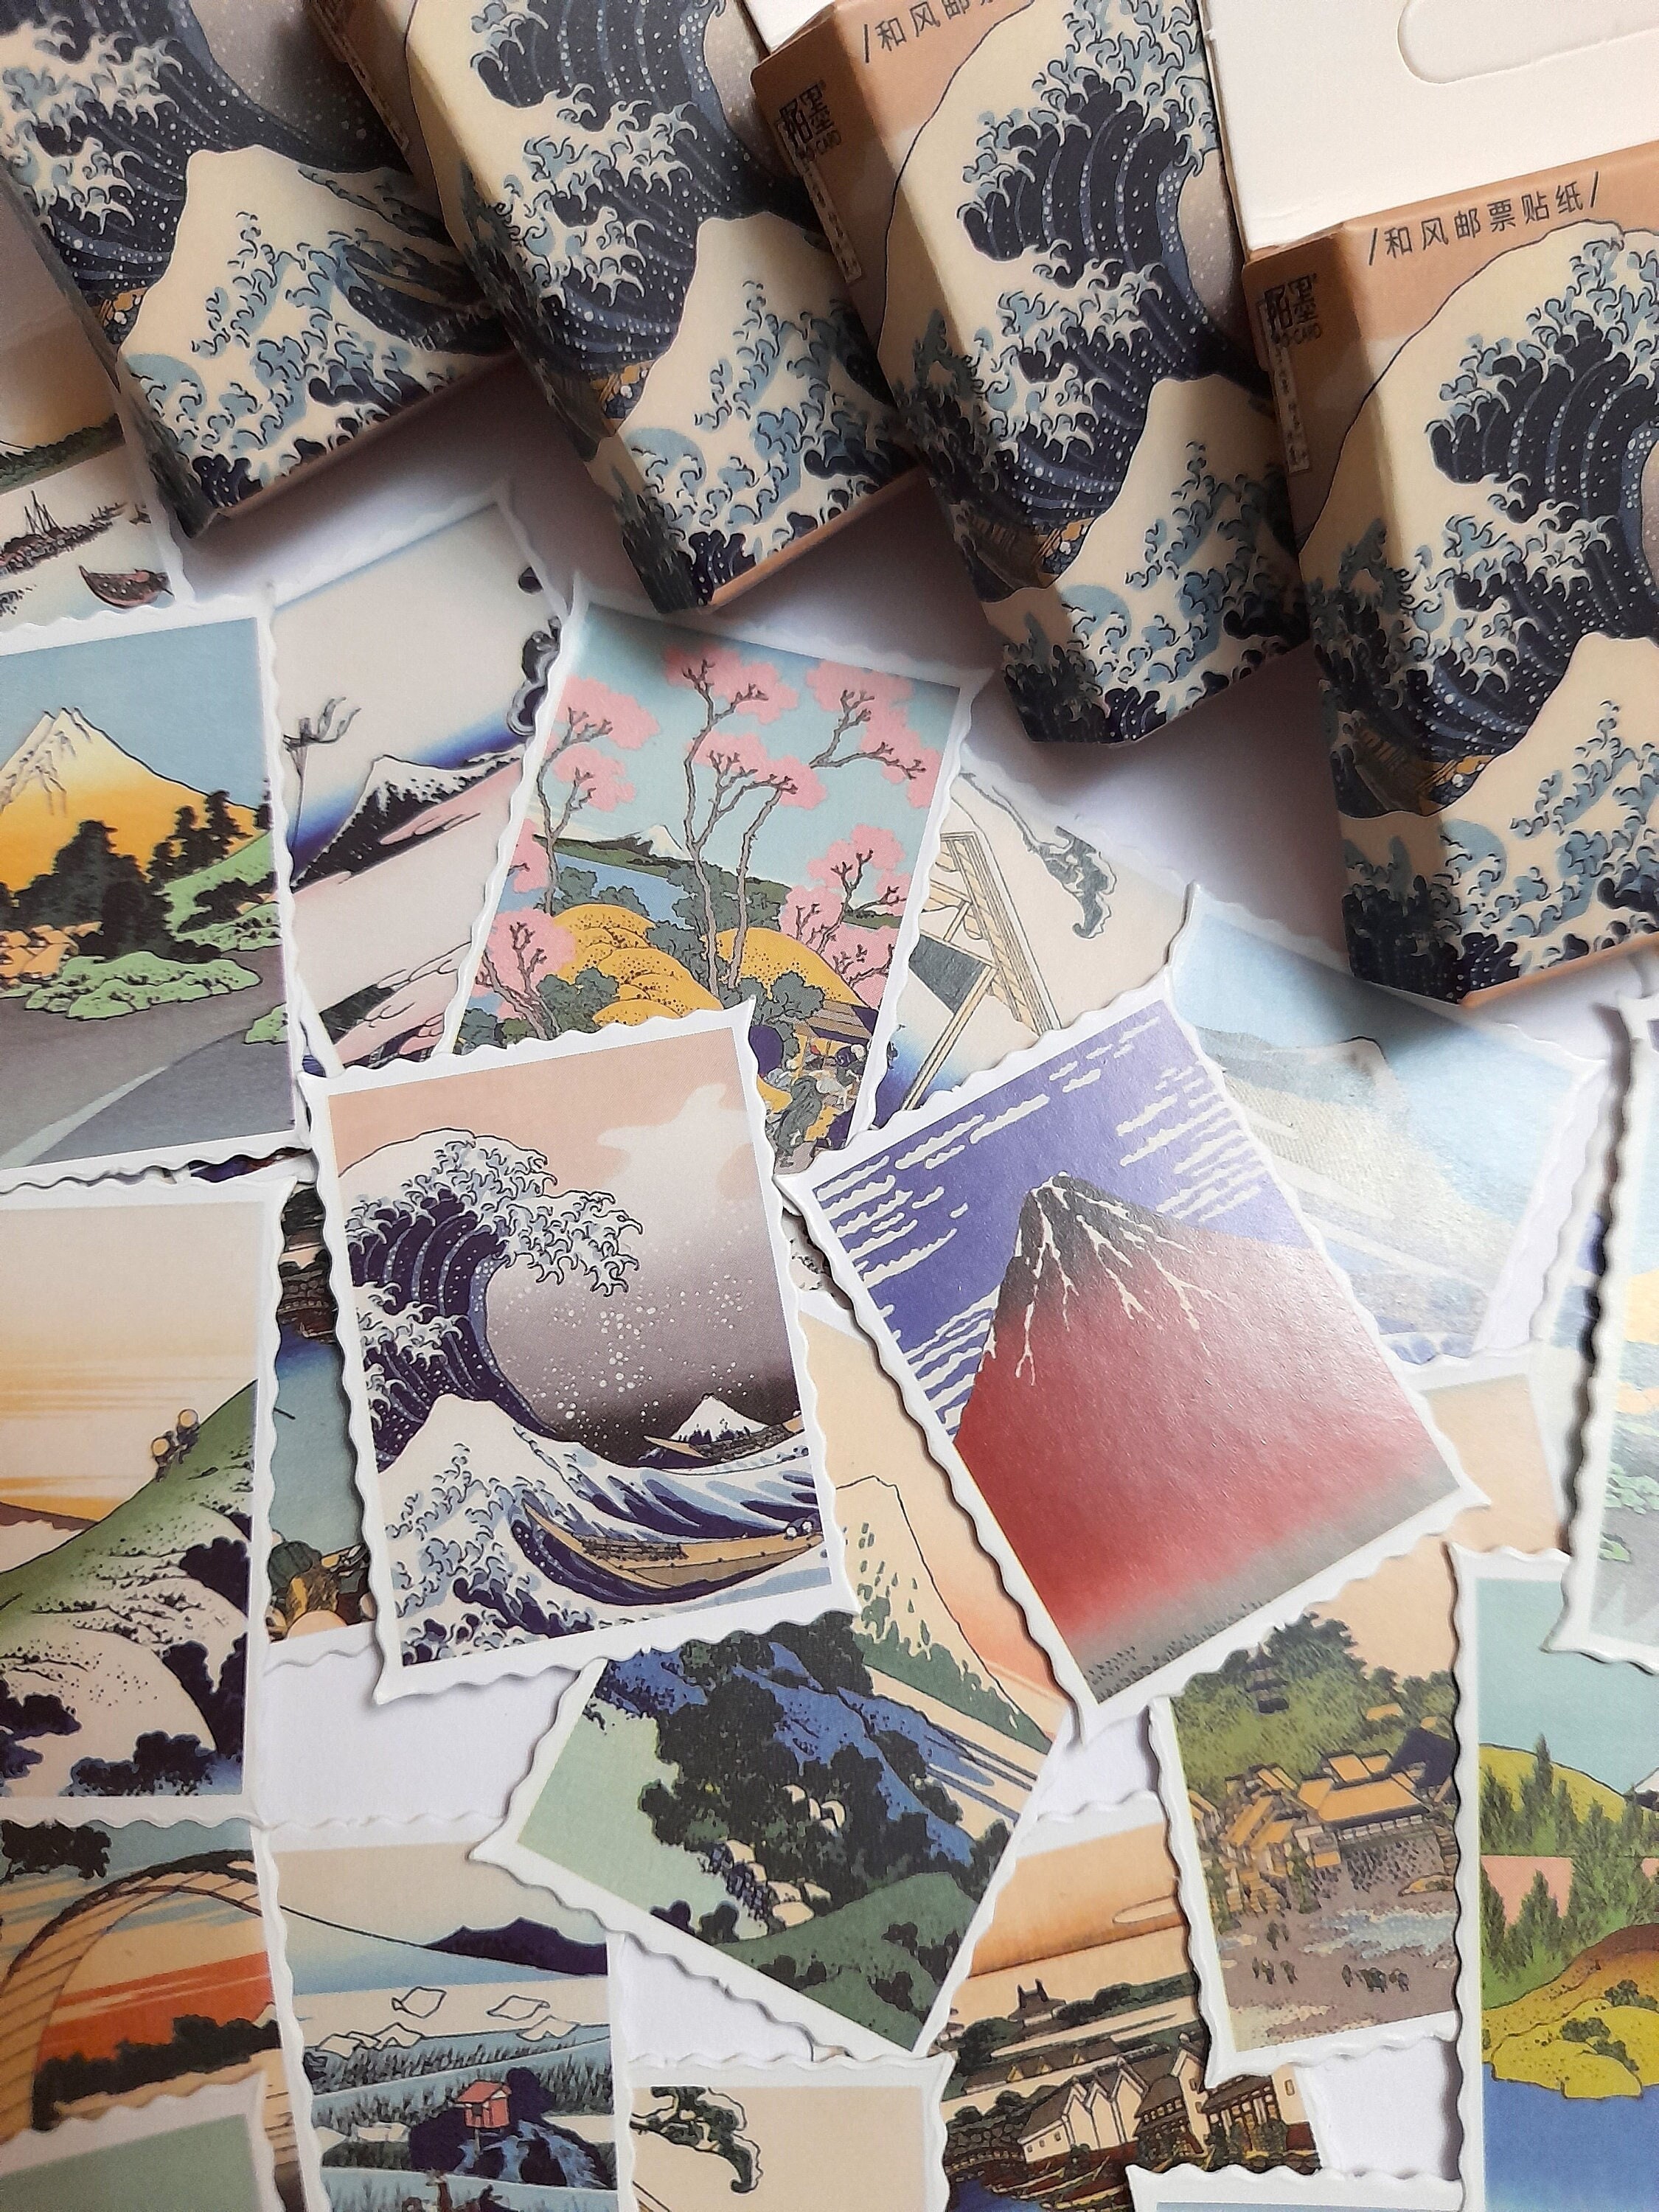 Mount Fujiyama - Aufkleber für Bankkarte, 2 Bankkartenformate